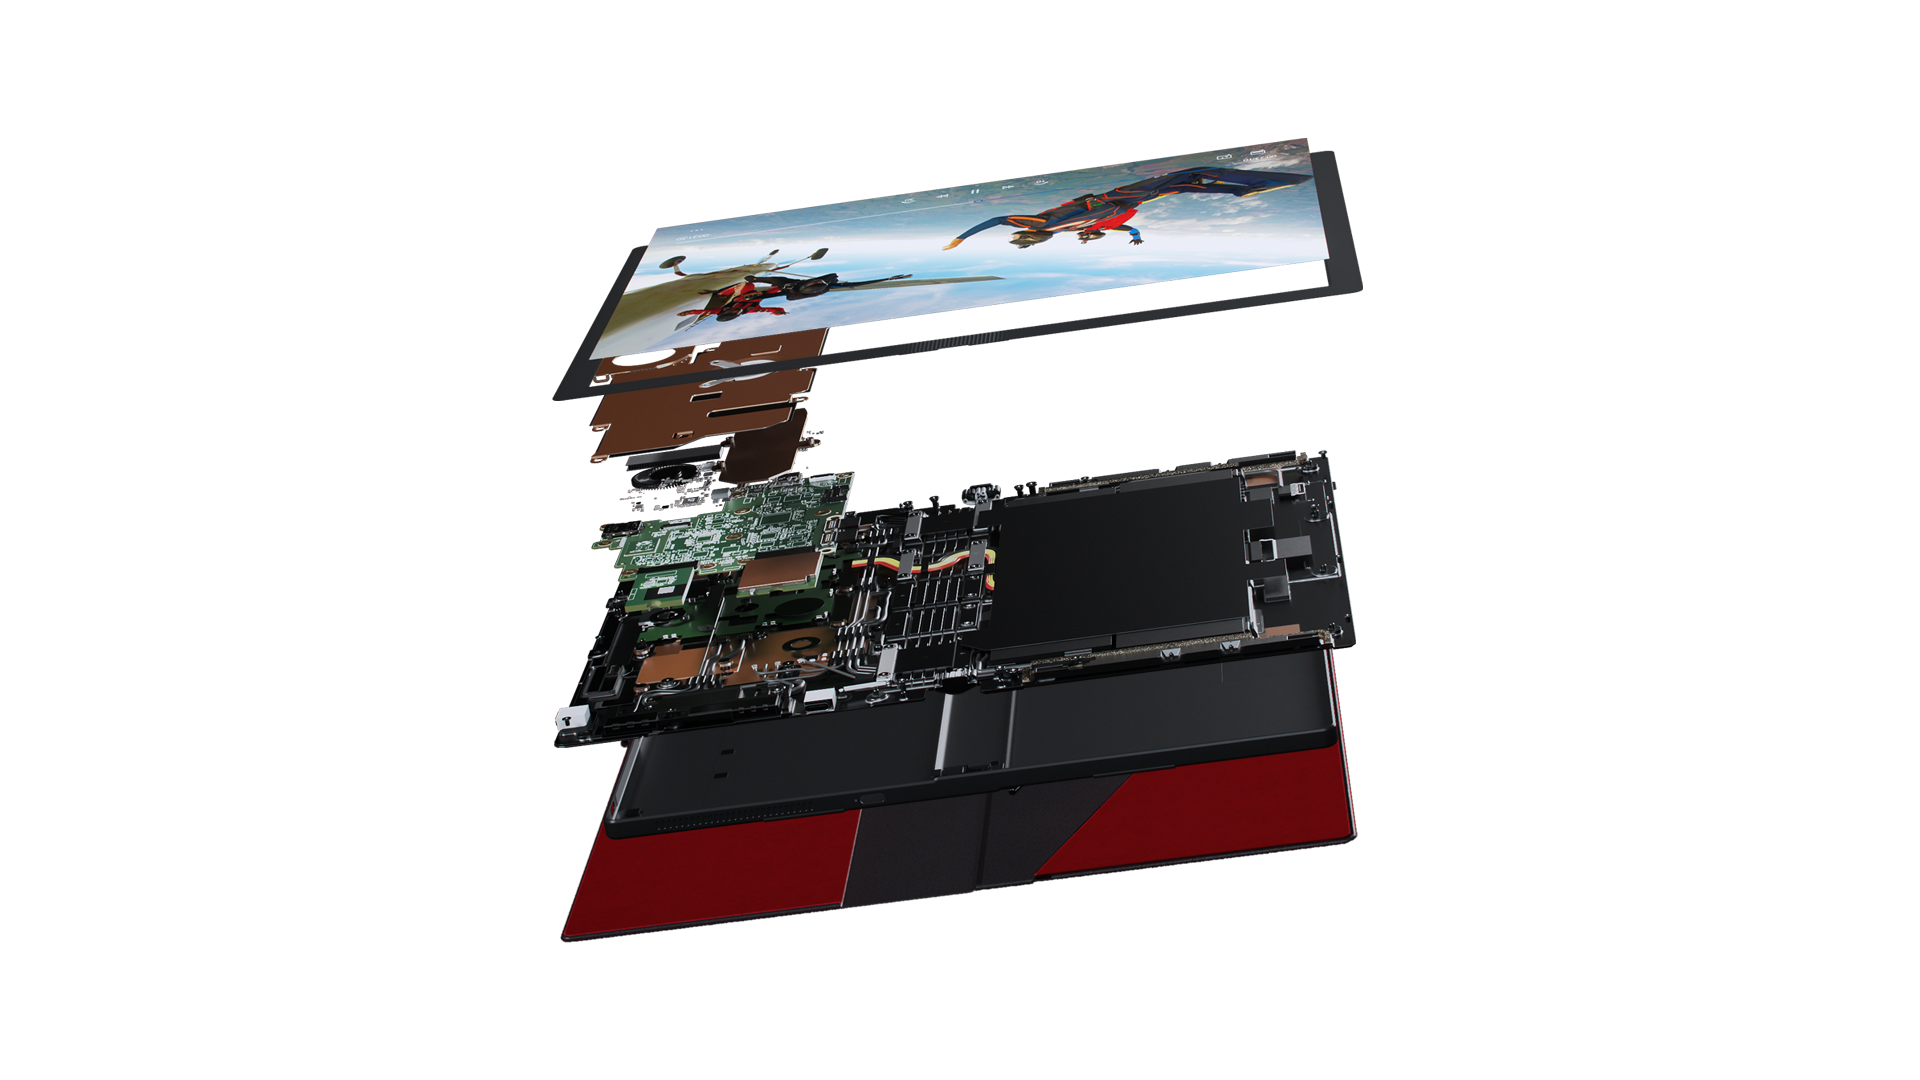 Awal dari tampilan memukau Lenovo ThinkPad X1 Fold yang berbaring lurus, menampilkan sekitar 3 lapisan